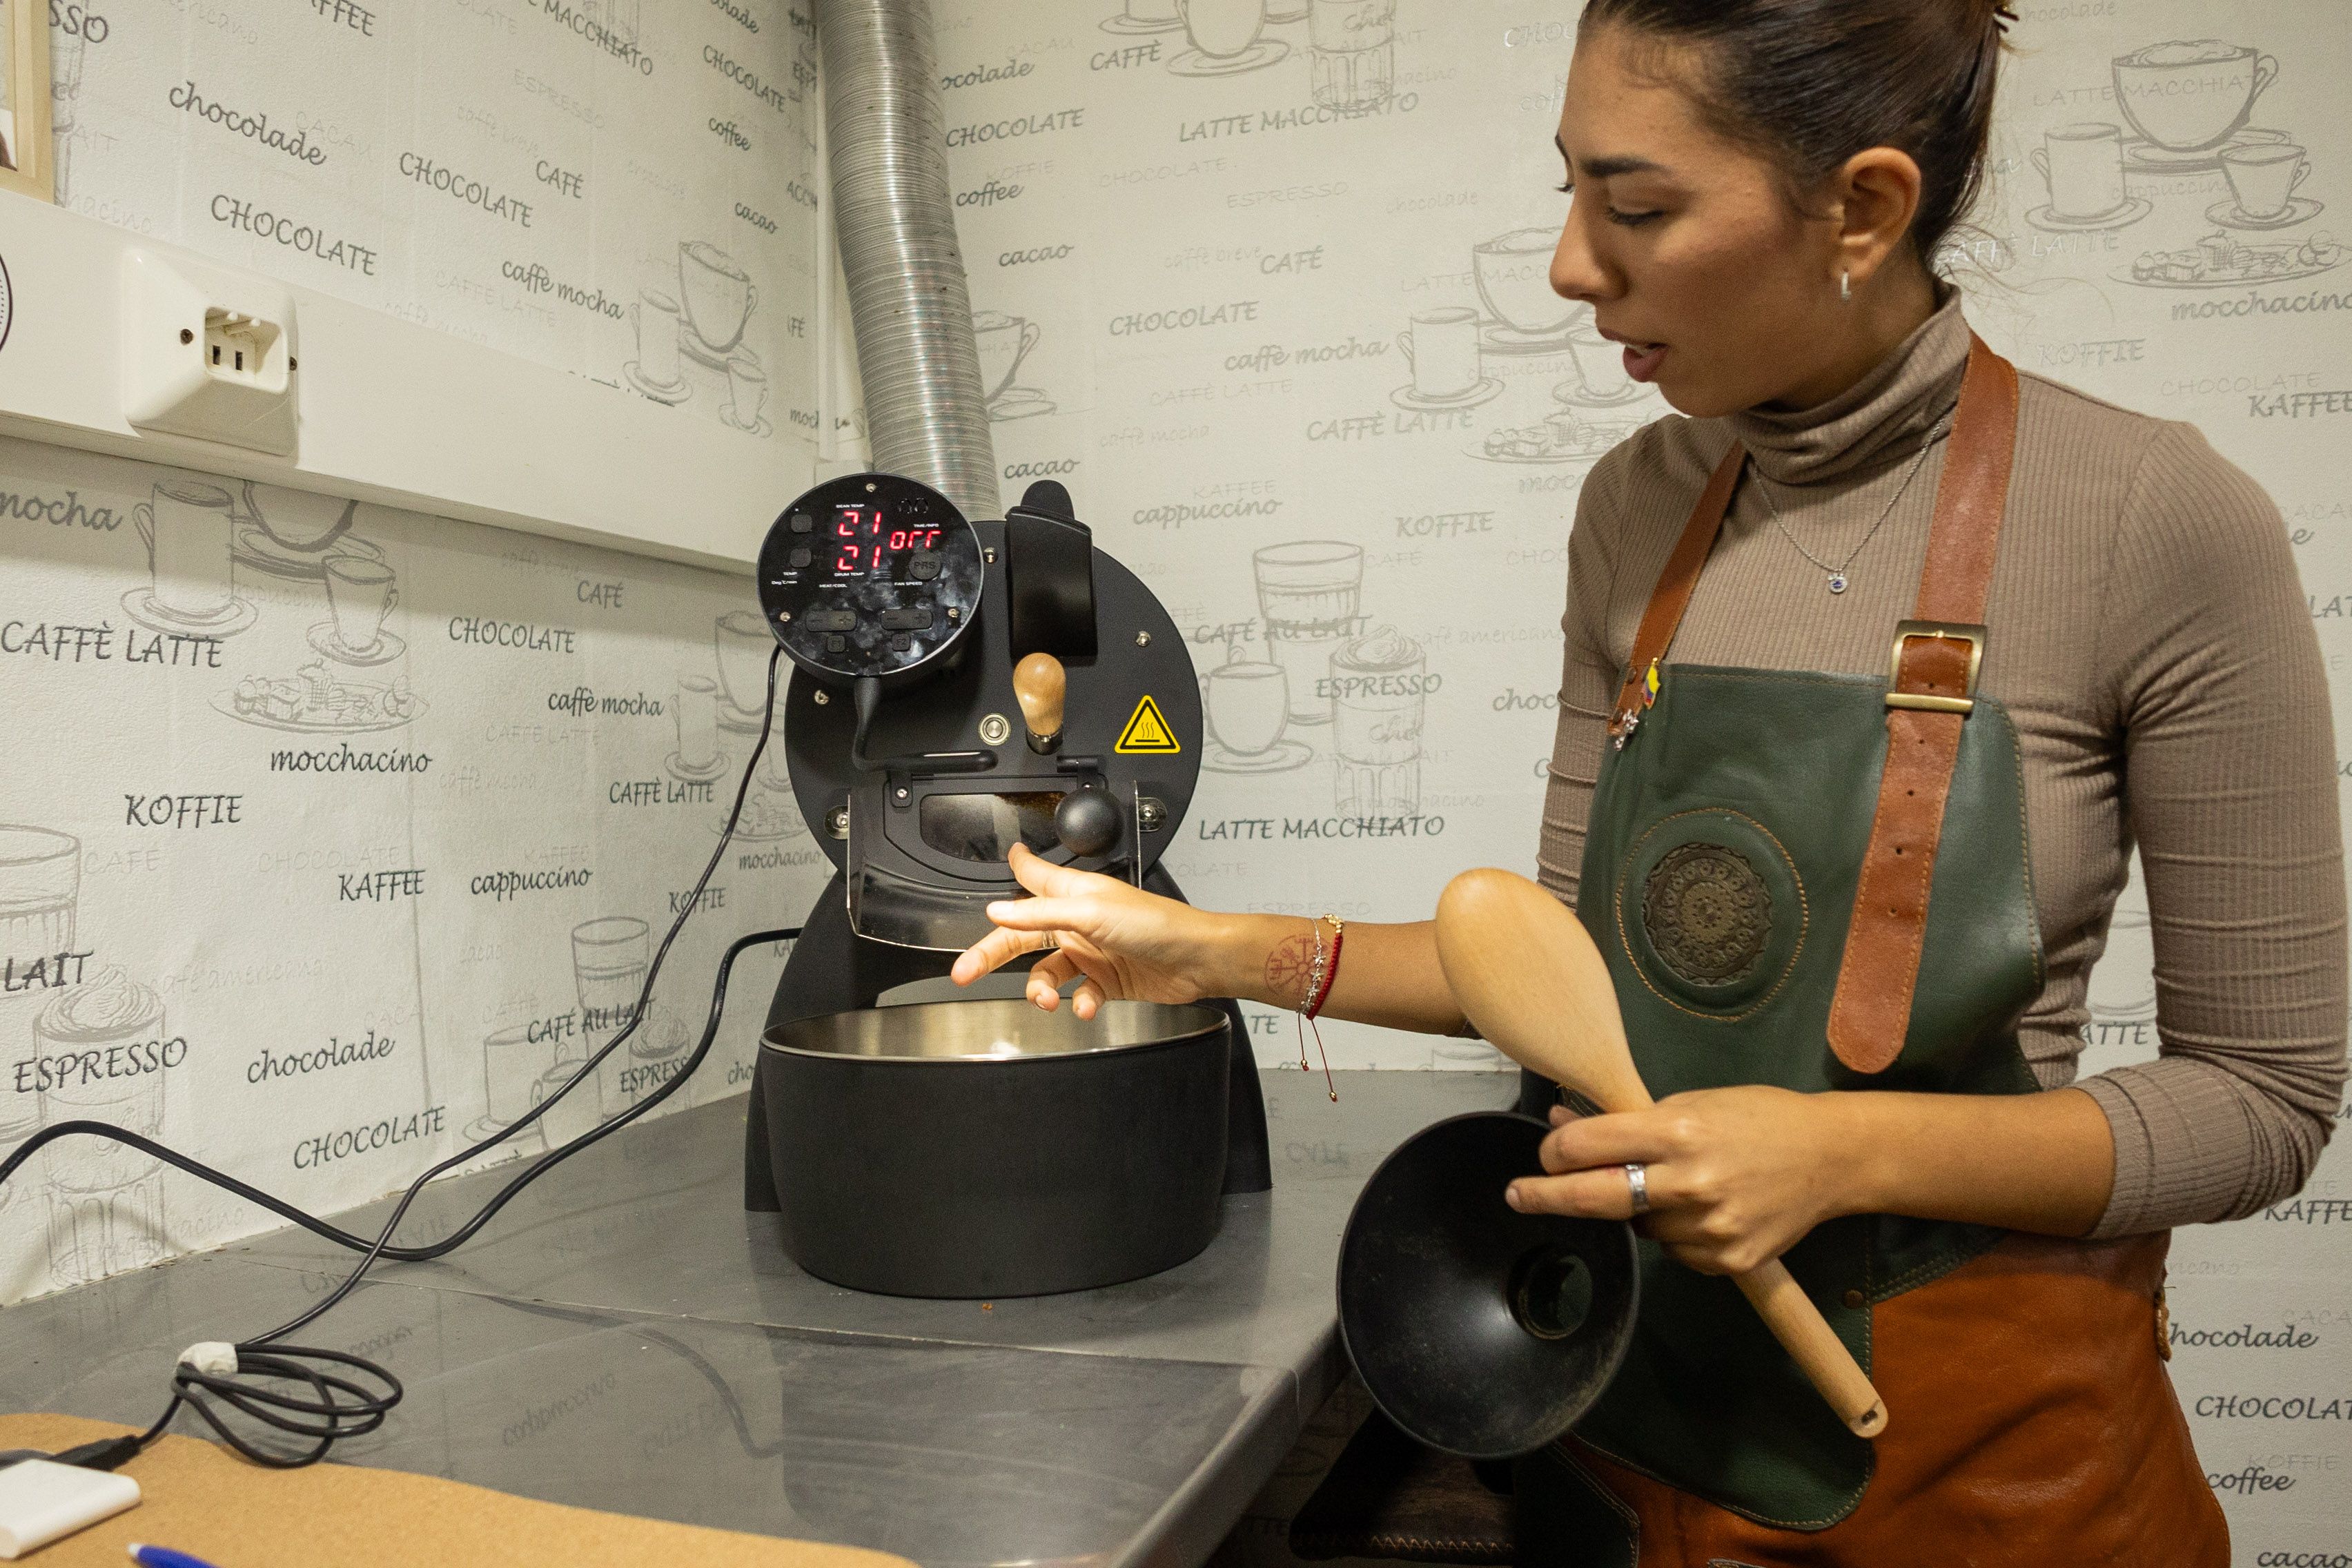 La colombiana explica el funcionamiento de la tostadora.